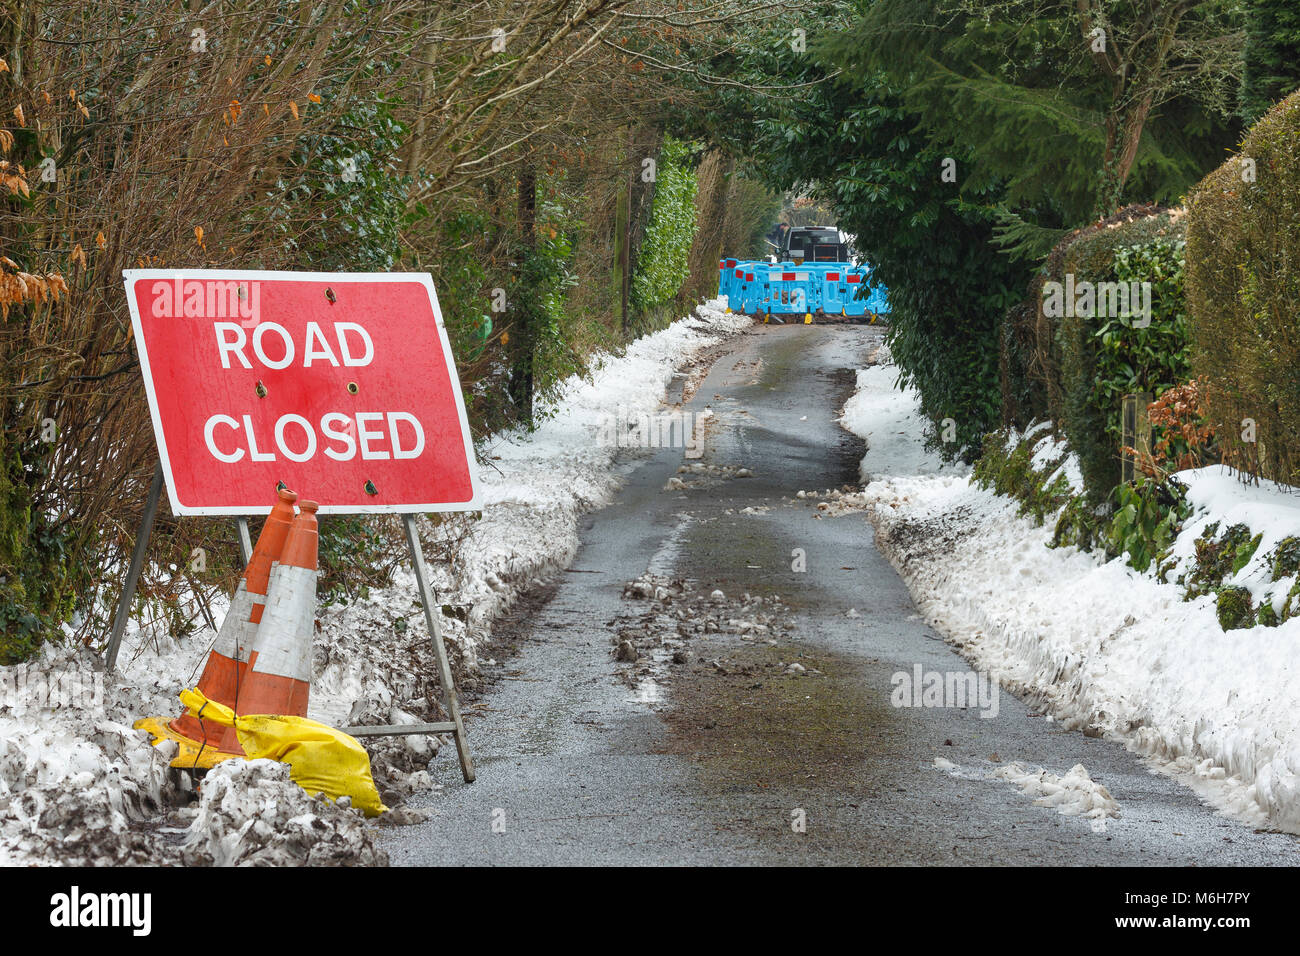 En raison de la fermeture des routes principales de l'eau en rafale après de fortes chutes de neige et des températures glaciales. Catbrook, Monmouthshire, Wales Banque D'Images